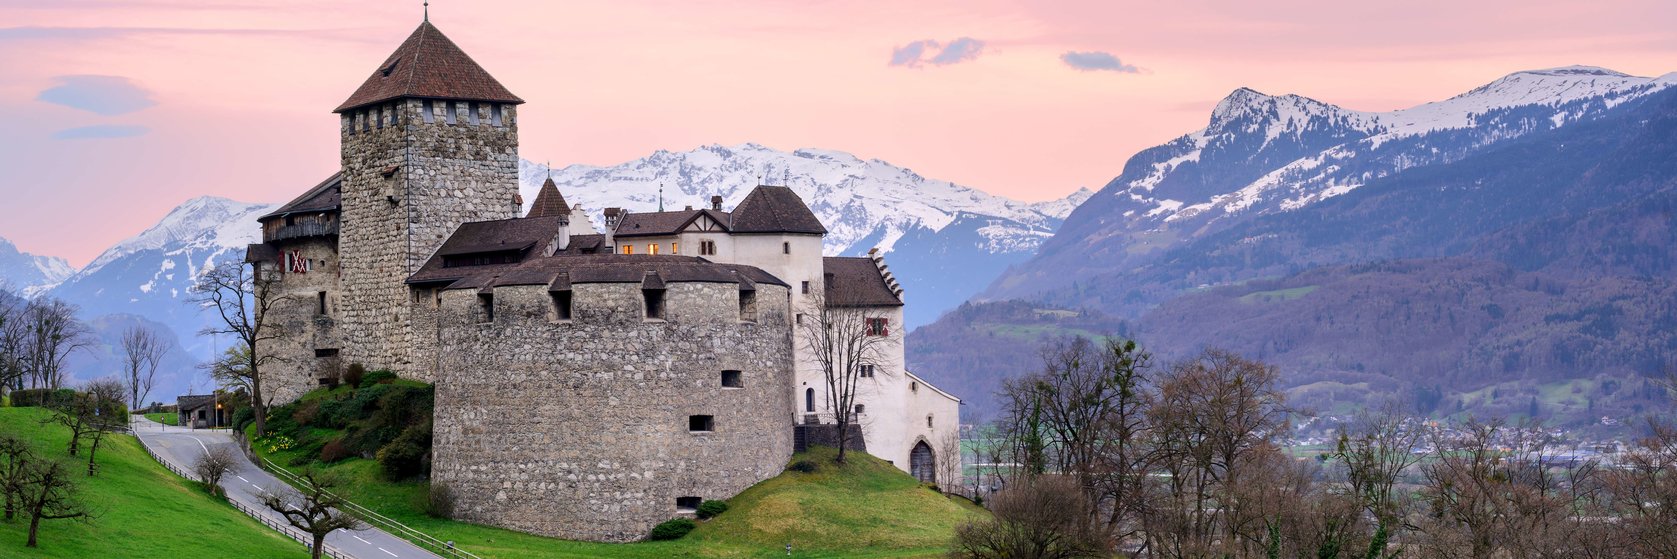 Ubytování Lichtenštejnsko